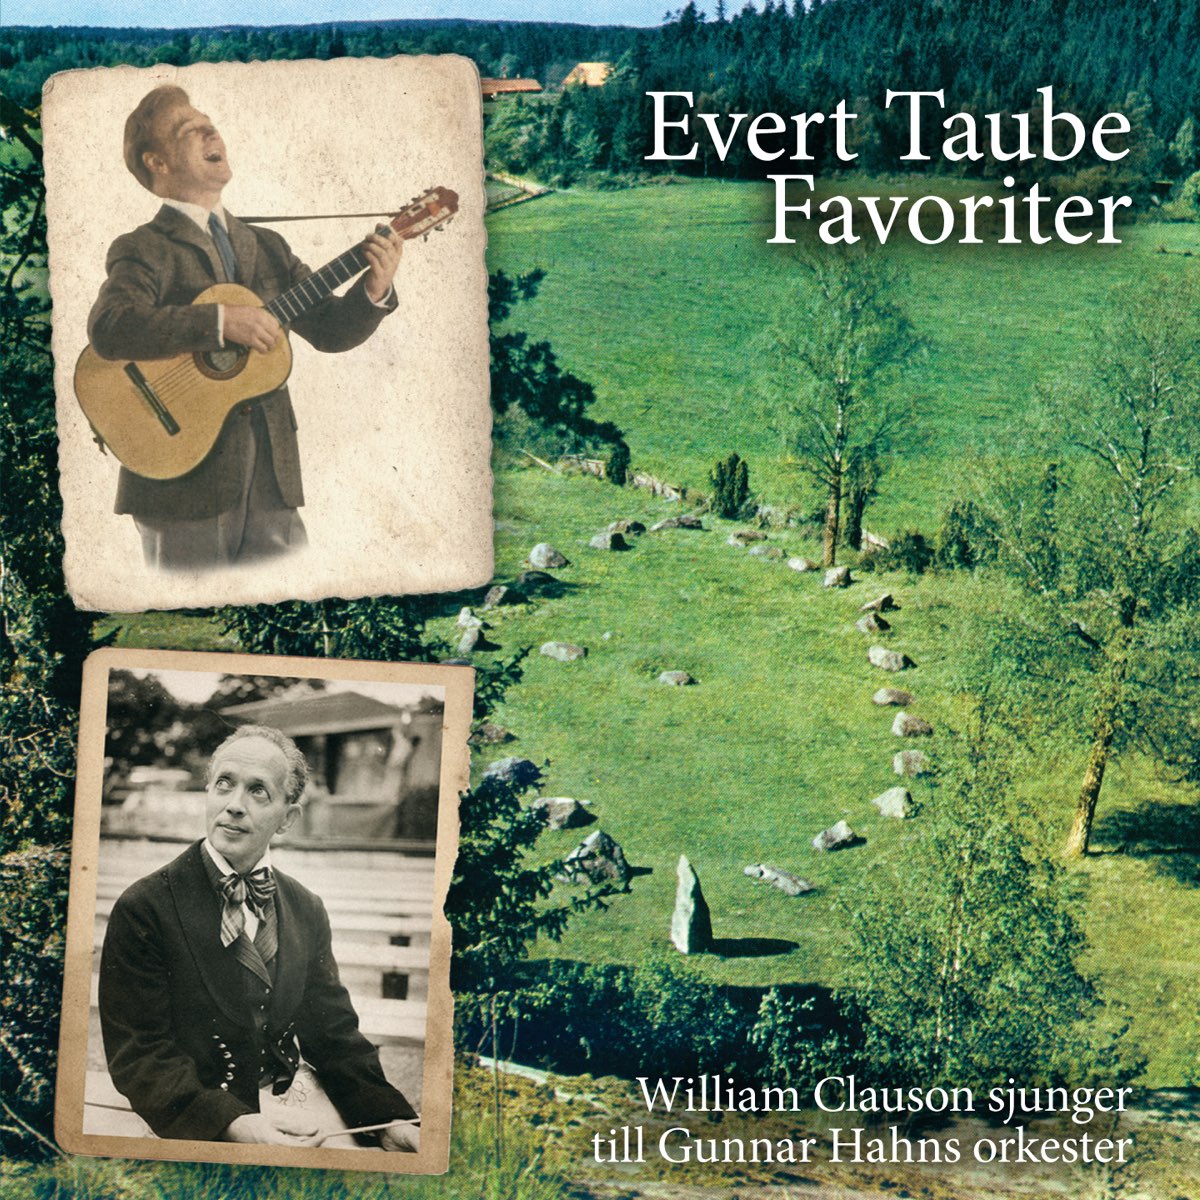 Evert taube favoriter - Album by William Clauson - Apple Music